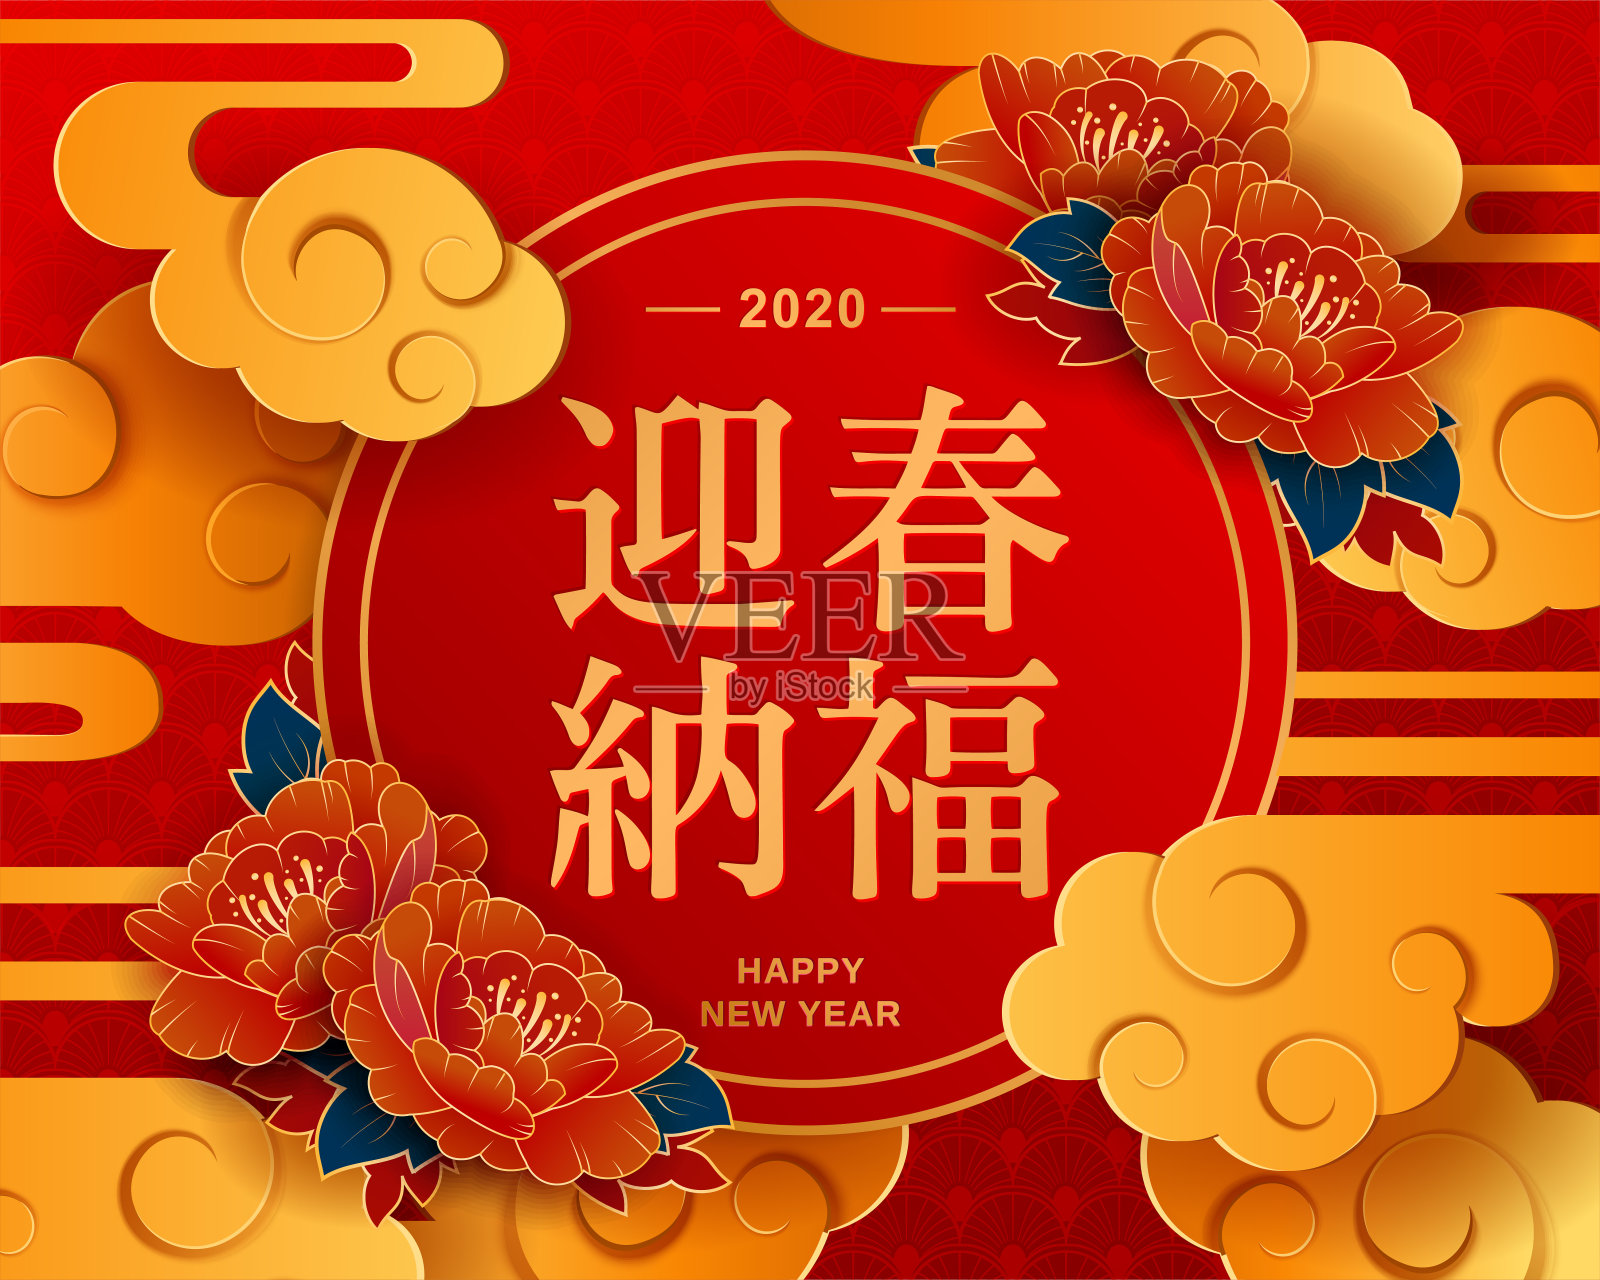 最好的祝愿鼠年到来在中国字。2020年新年快乐。中国新年。中国红圆灯笼和红色背景的花设计模板素材